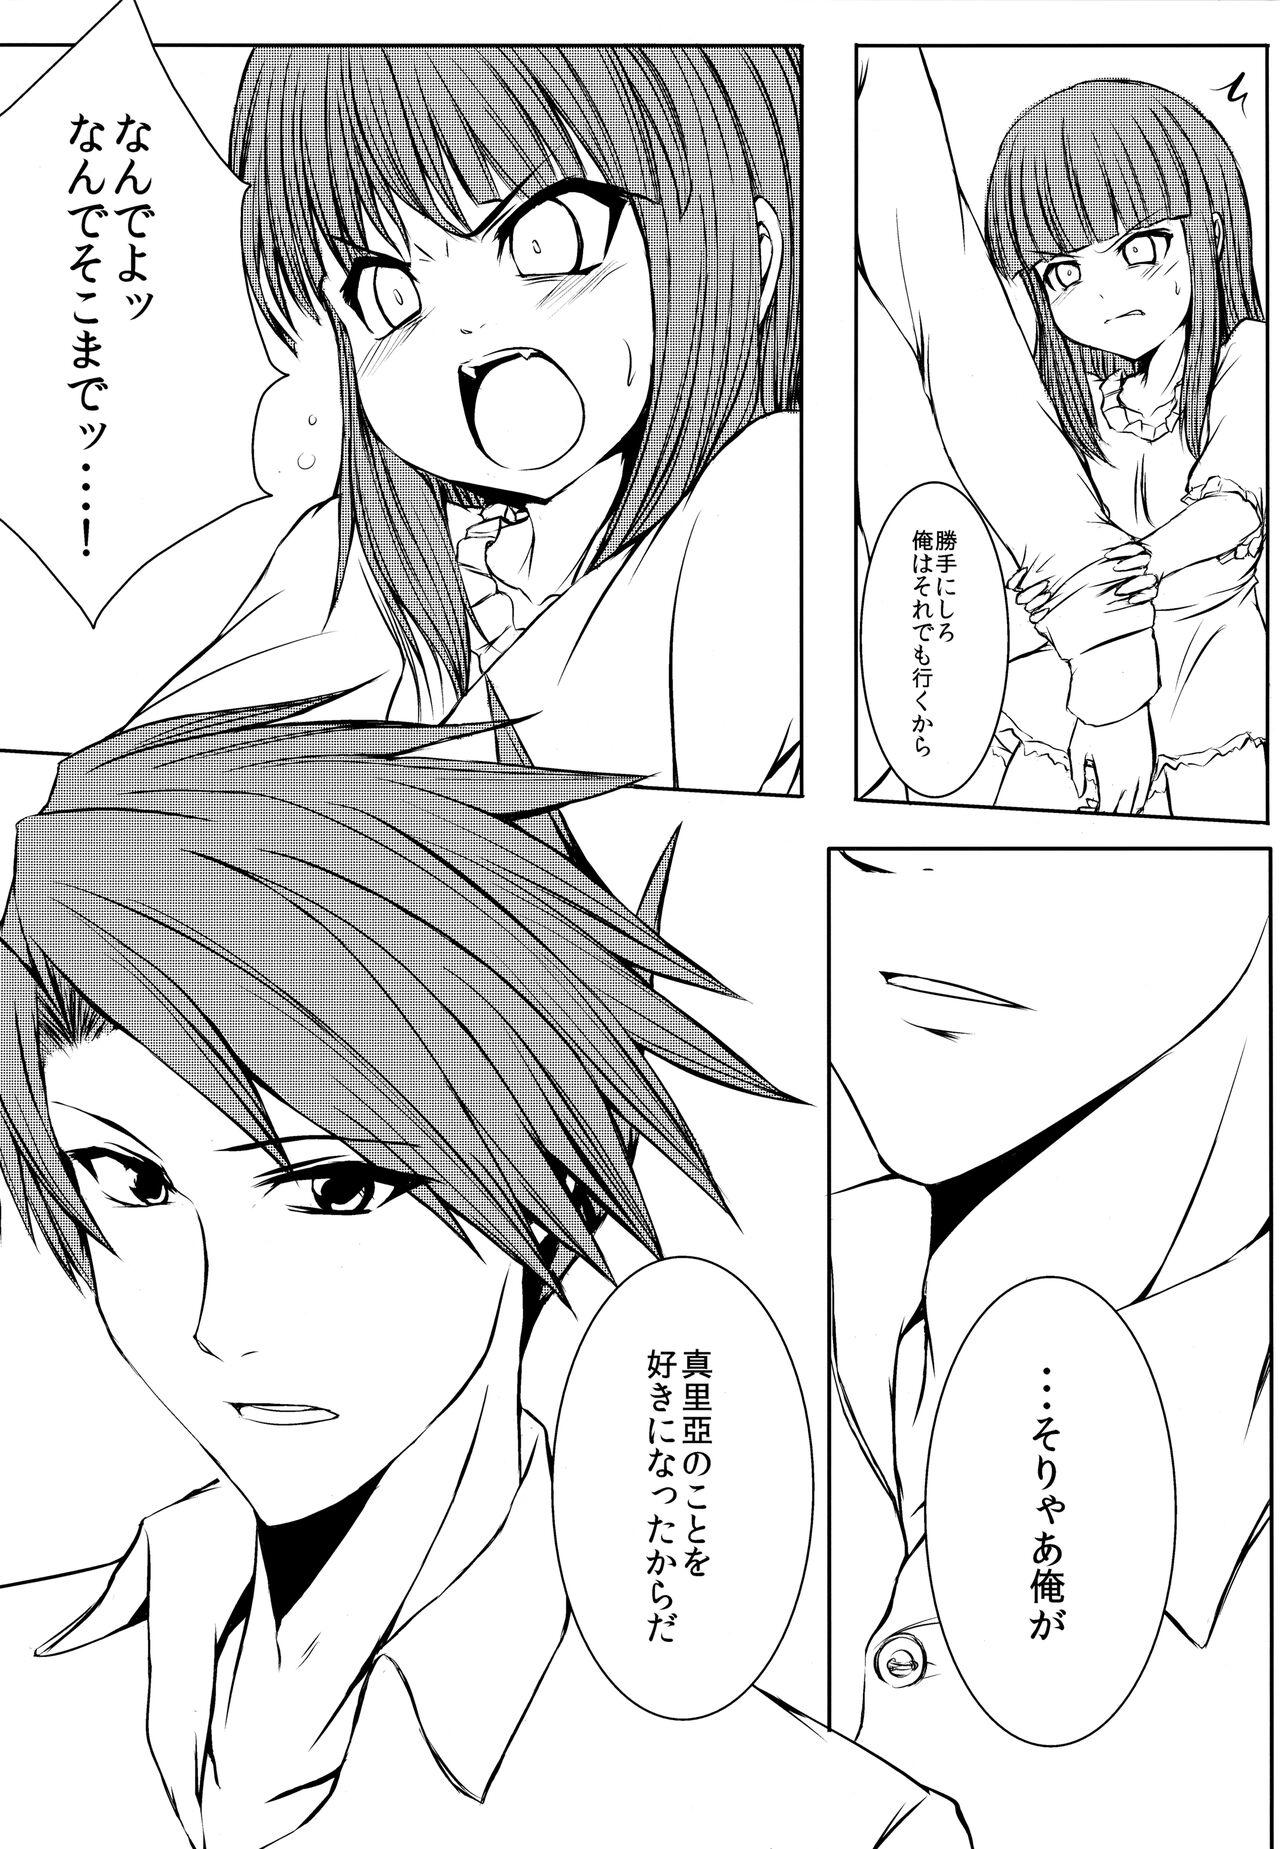 Gays Iedenako 5 - Umineko no naku koro ni | when the seagulls cry Peitos - Page 8